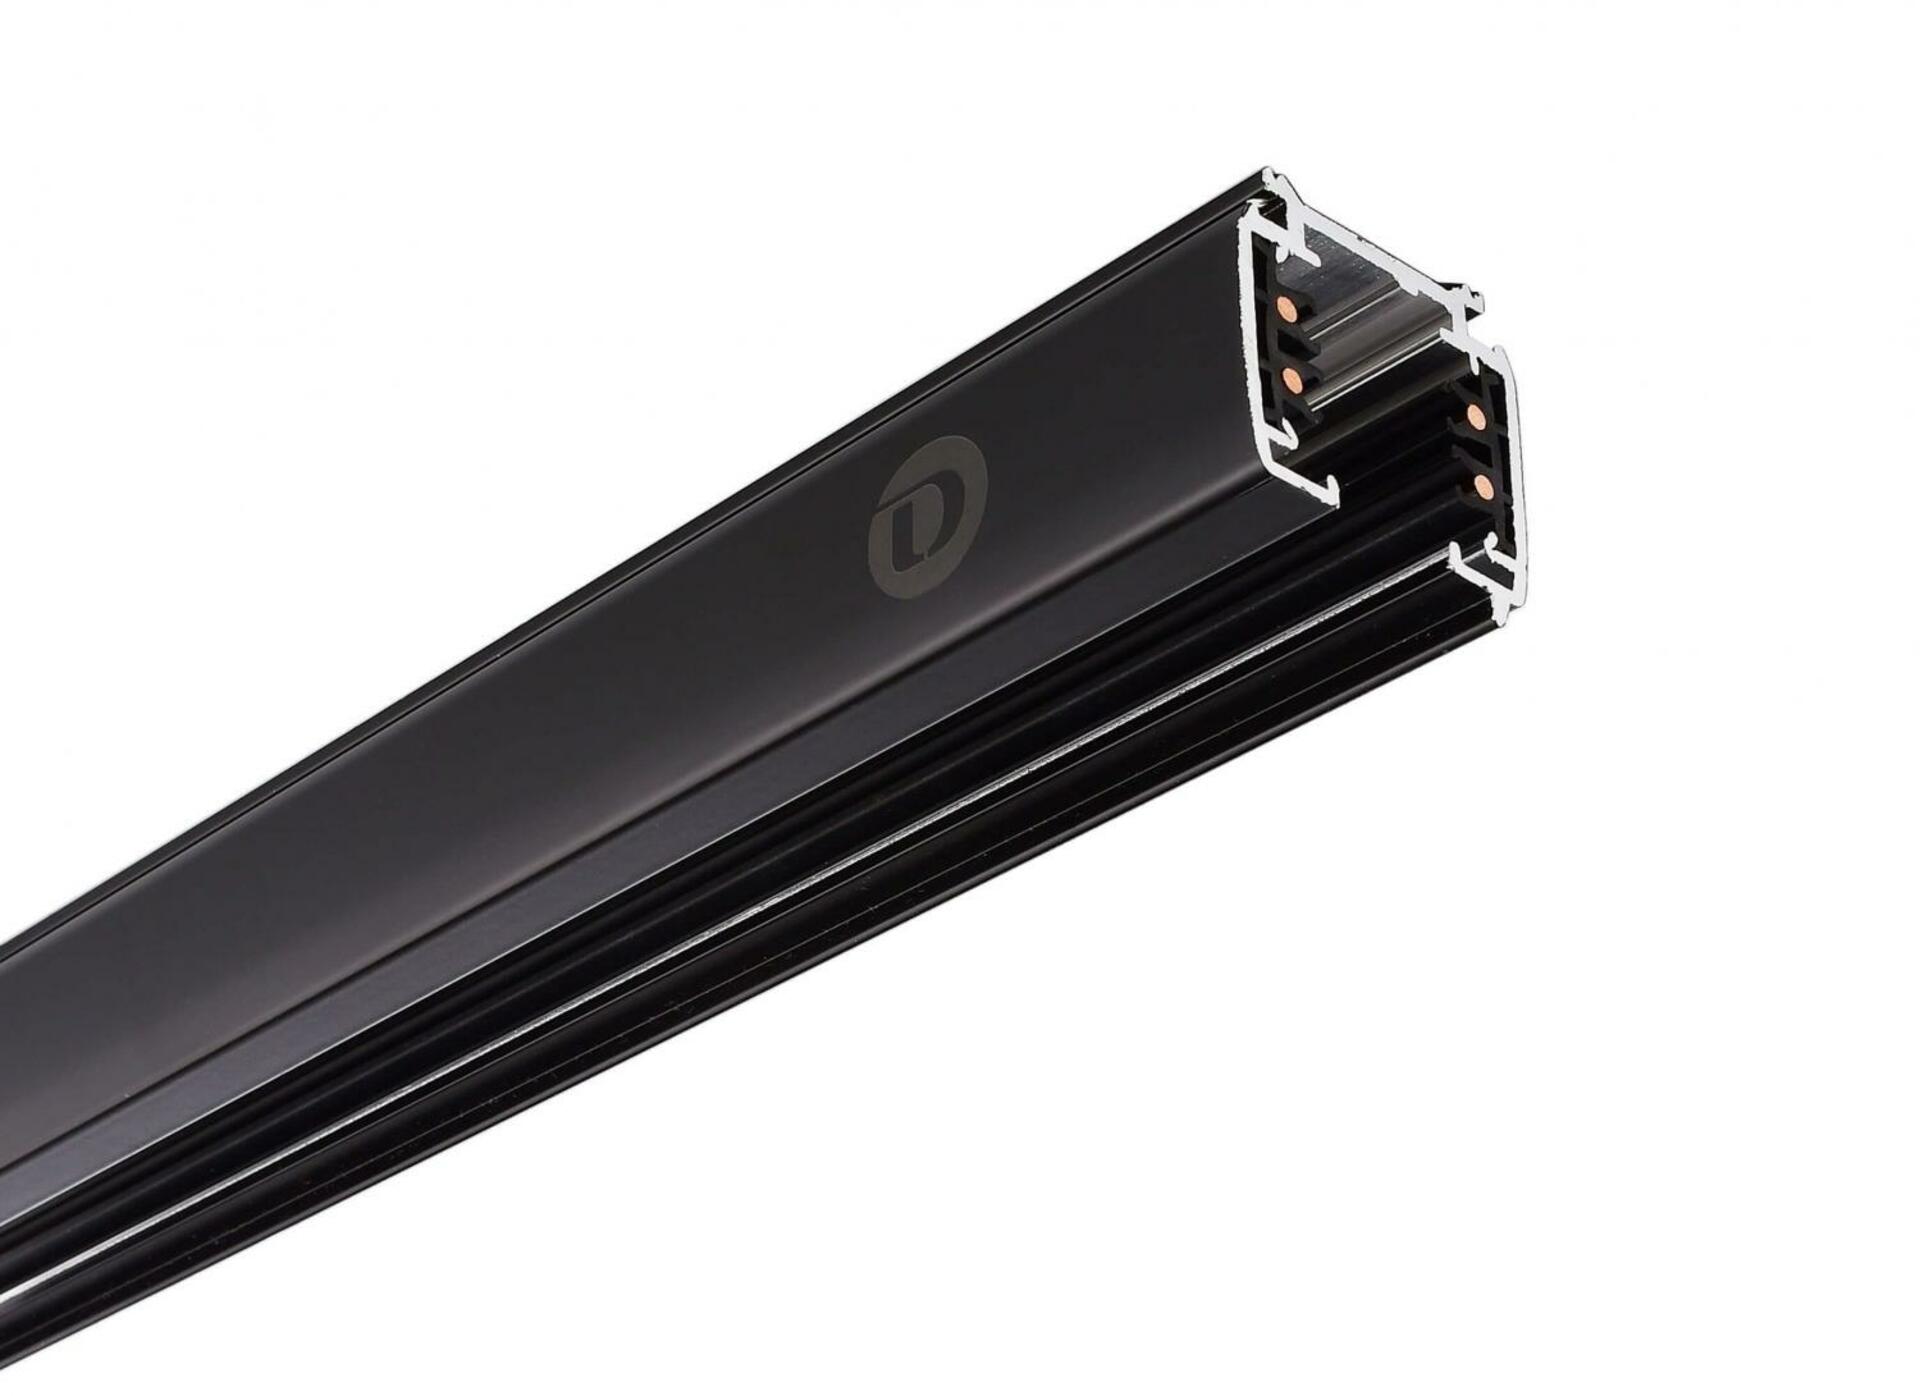 Light Impressions Deko-Light kolejnicový systém 3-fázový 230V D Line vestavná lišta 3m 220-240V AC/50-60Hz černá RAL 9011 3000  710008